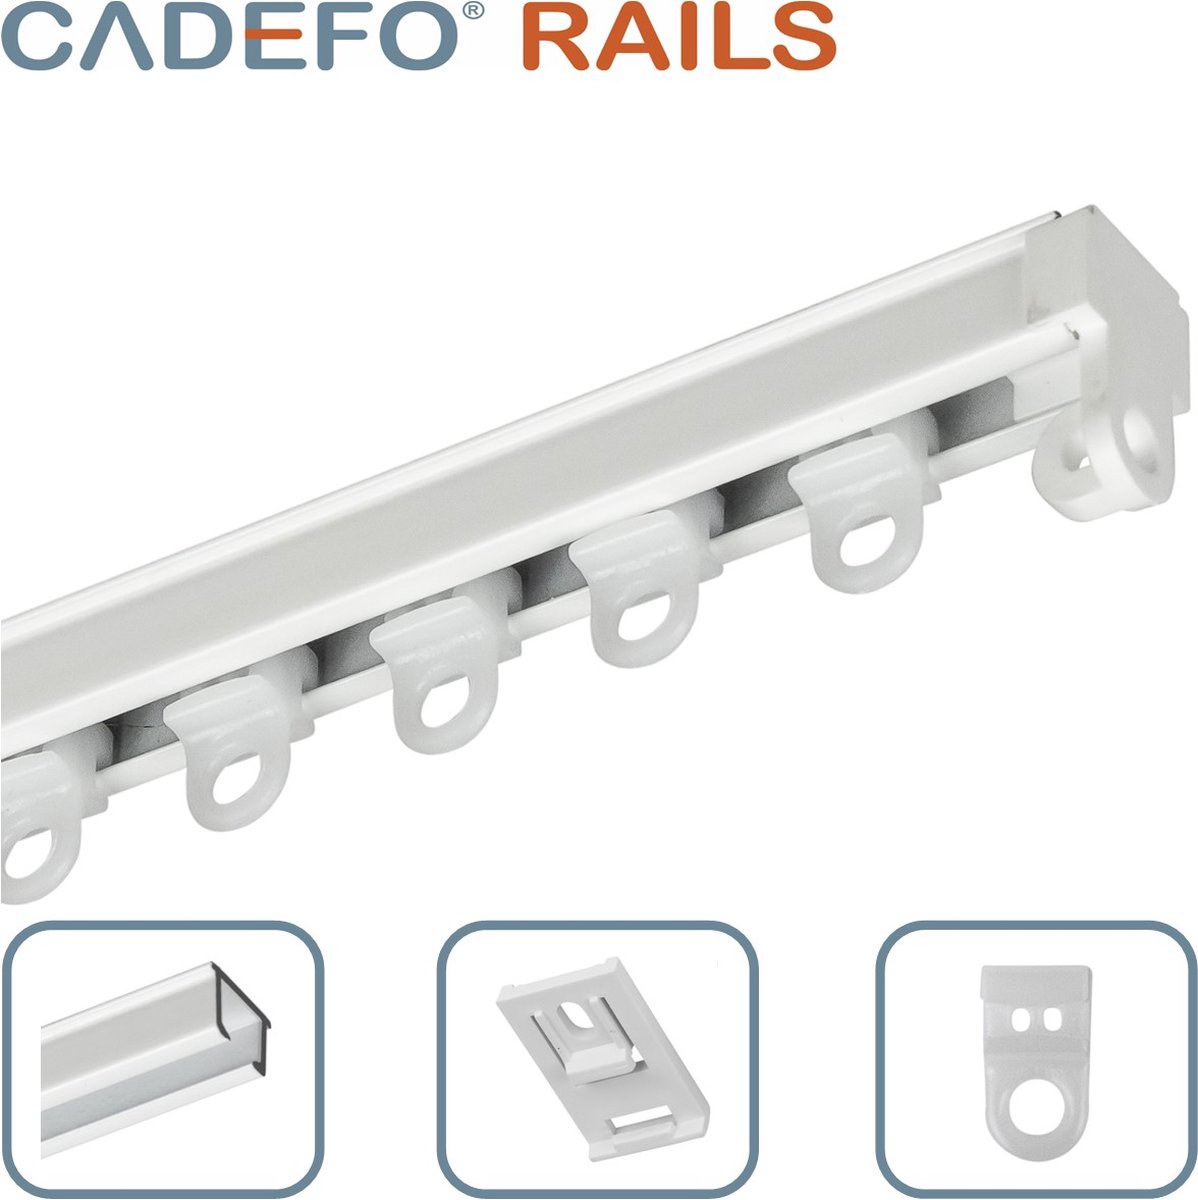 CADEFO RAILS (101 - 150 cm) Gordijnrails - Compleet op maat! - UIT 1 STUK - Leverbaar tot 6 meter - Plafondbevestiging - Lengte 113 cm